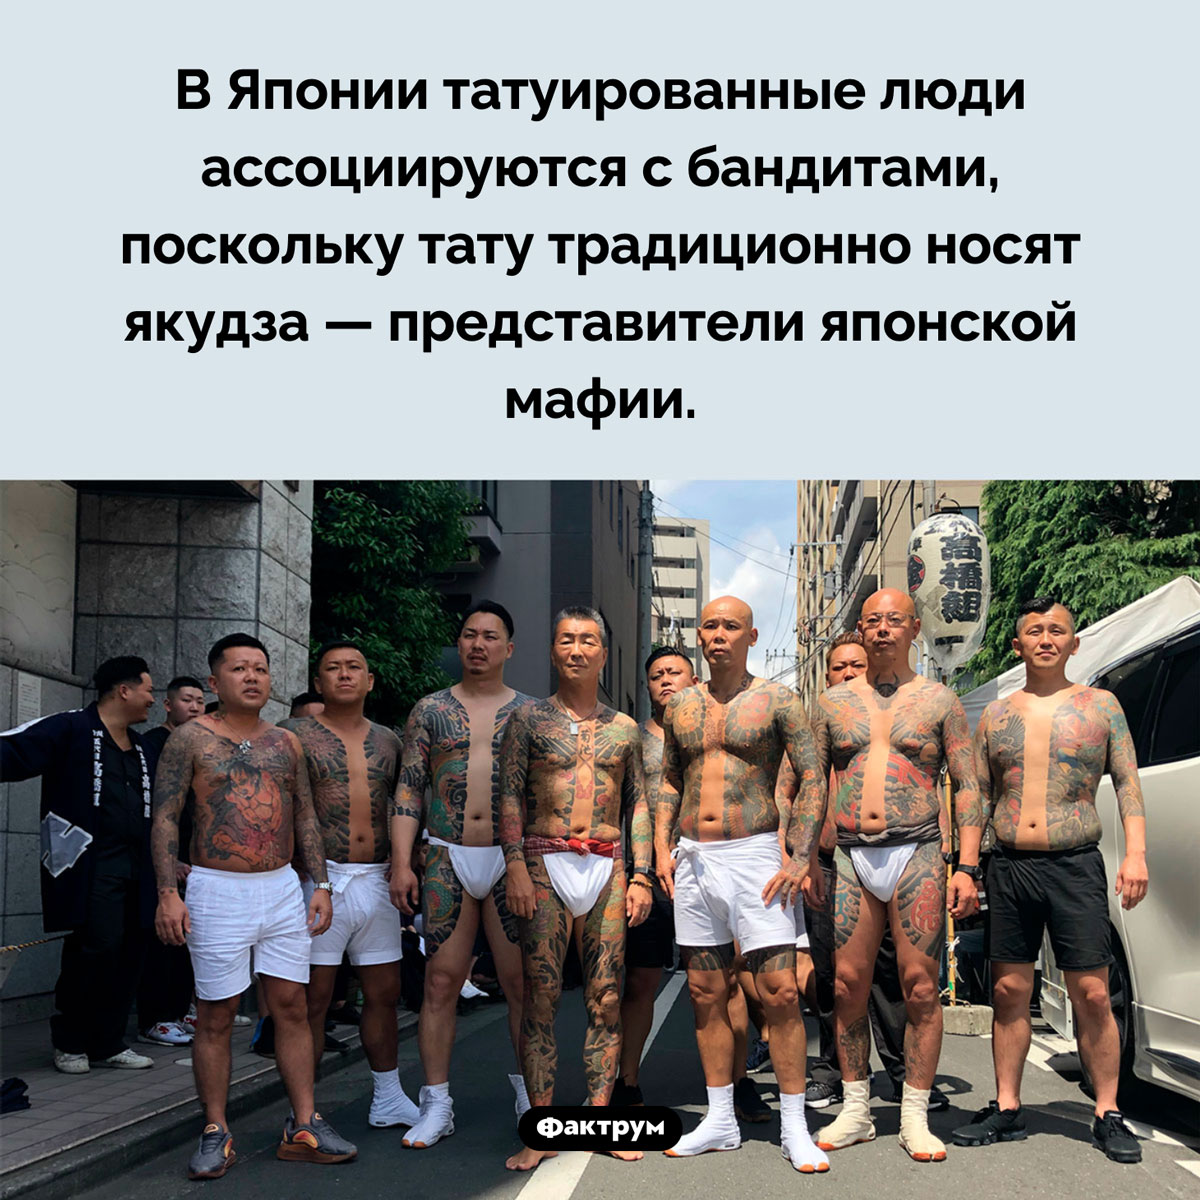 Татуировки в Японии. В Японии татуированные люди ассоциируются с бандитами, поскольку тату традиционно носят якудза — представители японской мафии.